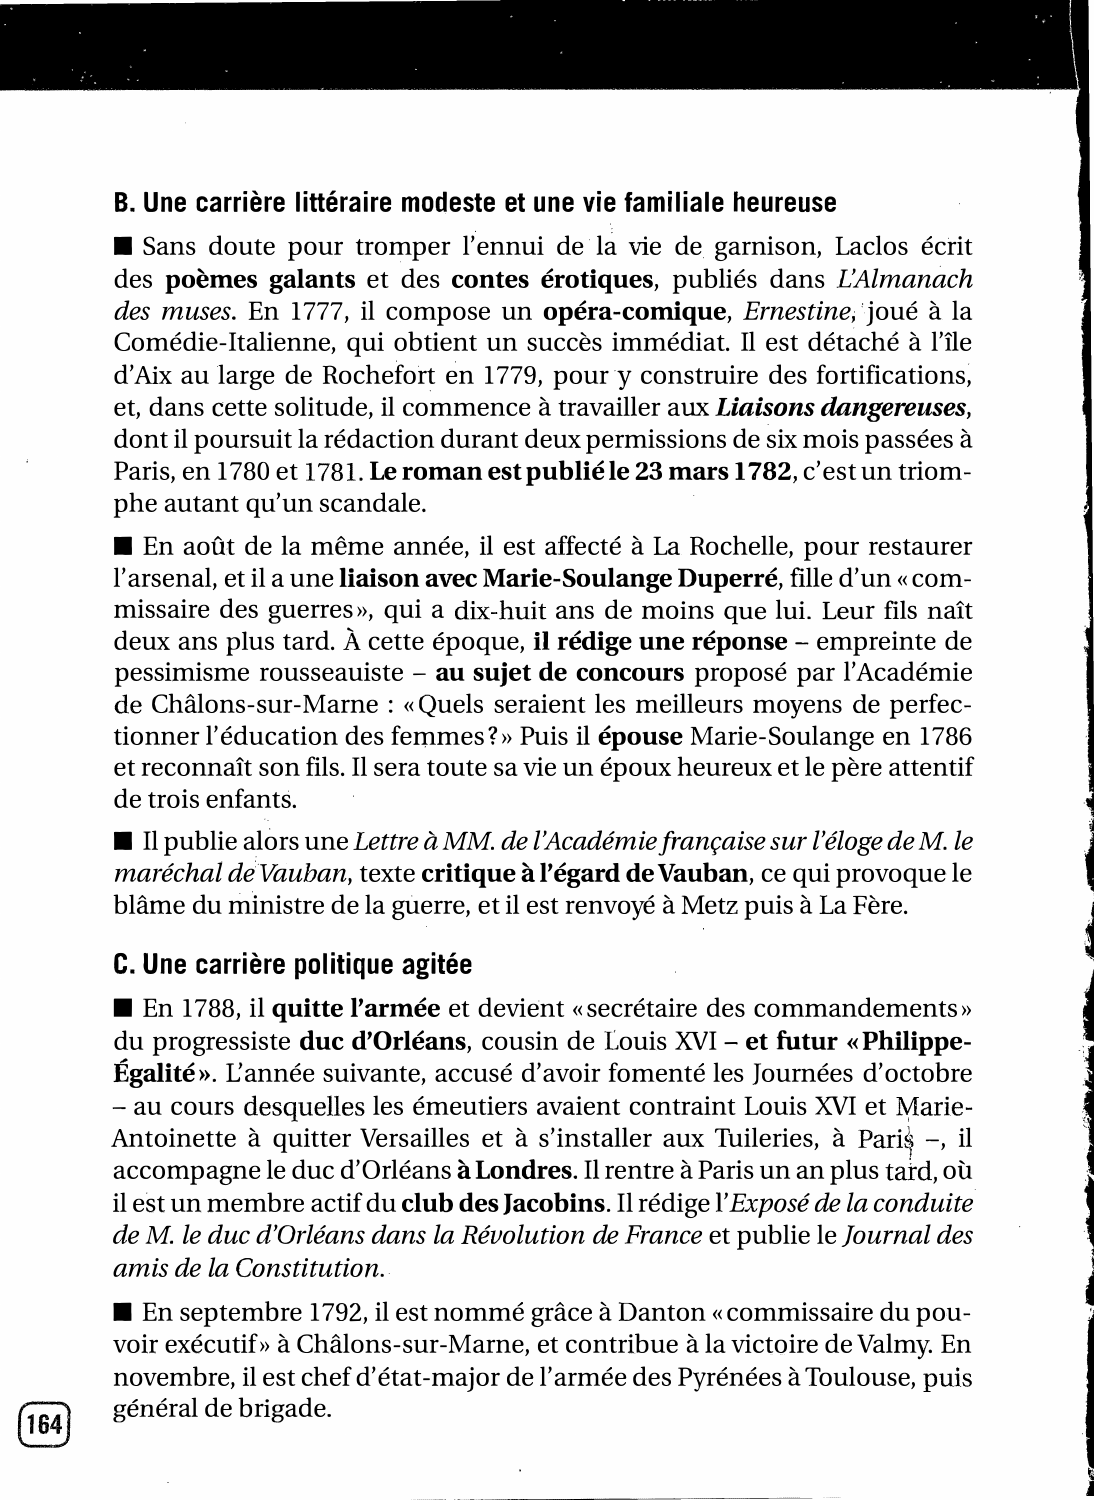 Prévisualisation du document Les Liaisons dangereuses, roman de Laclos (1782) et film de Frears (1988) : présentation